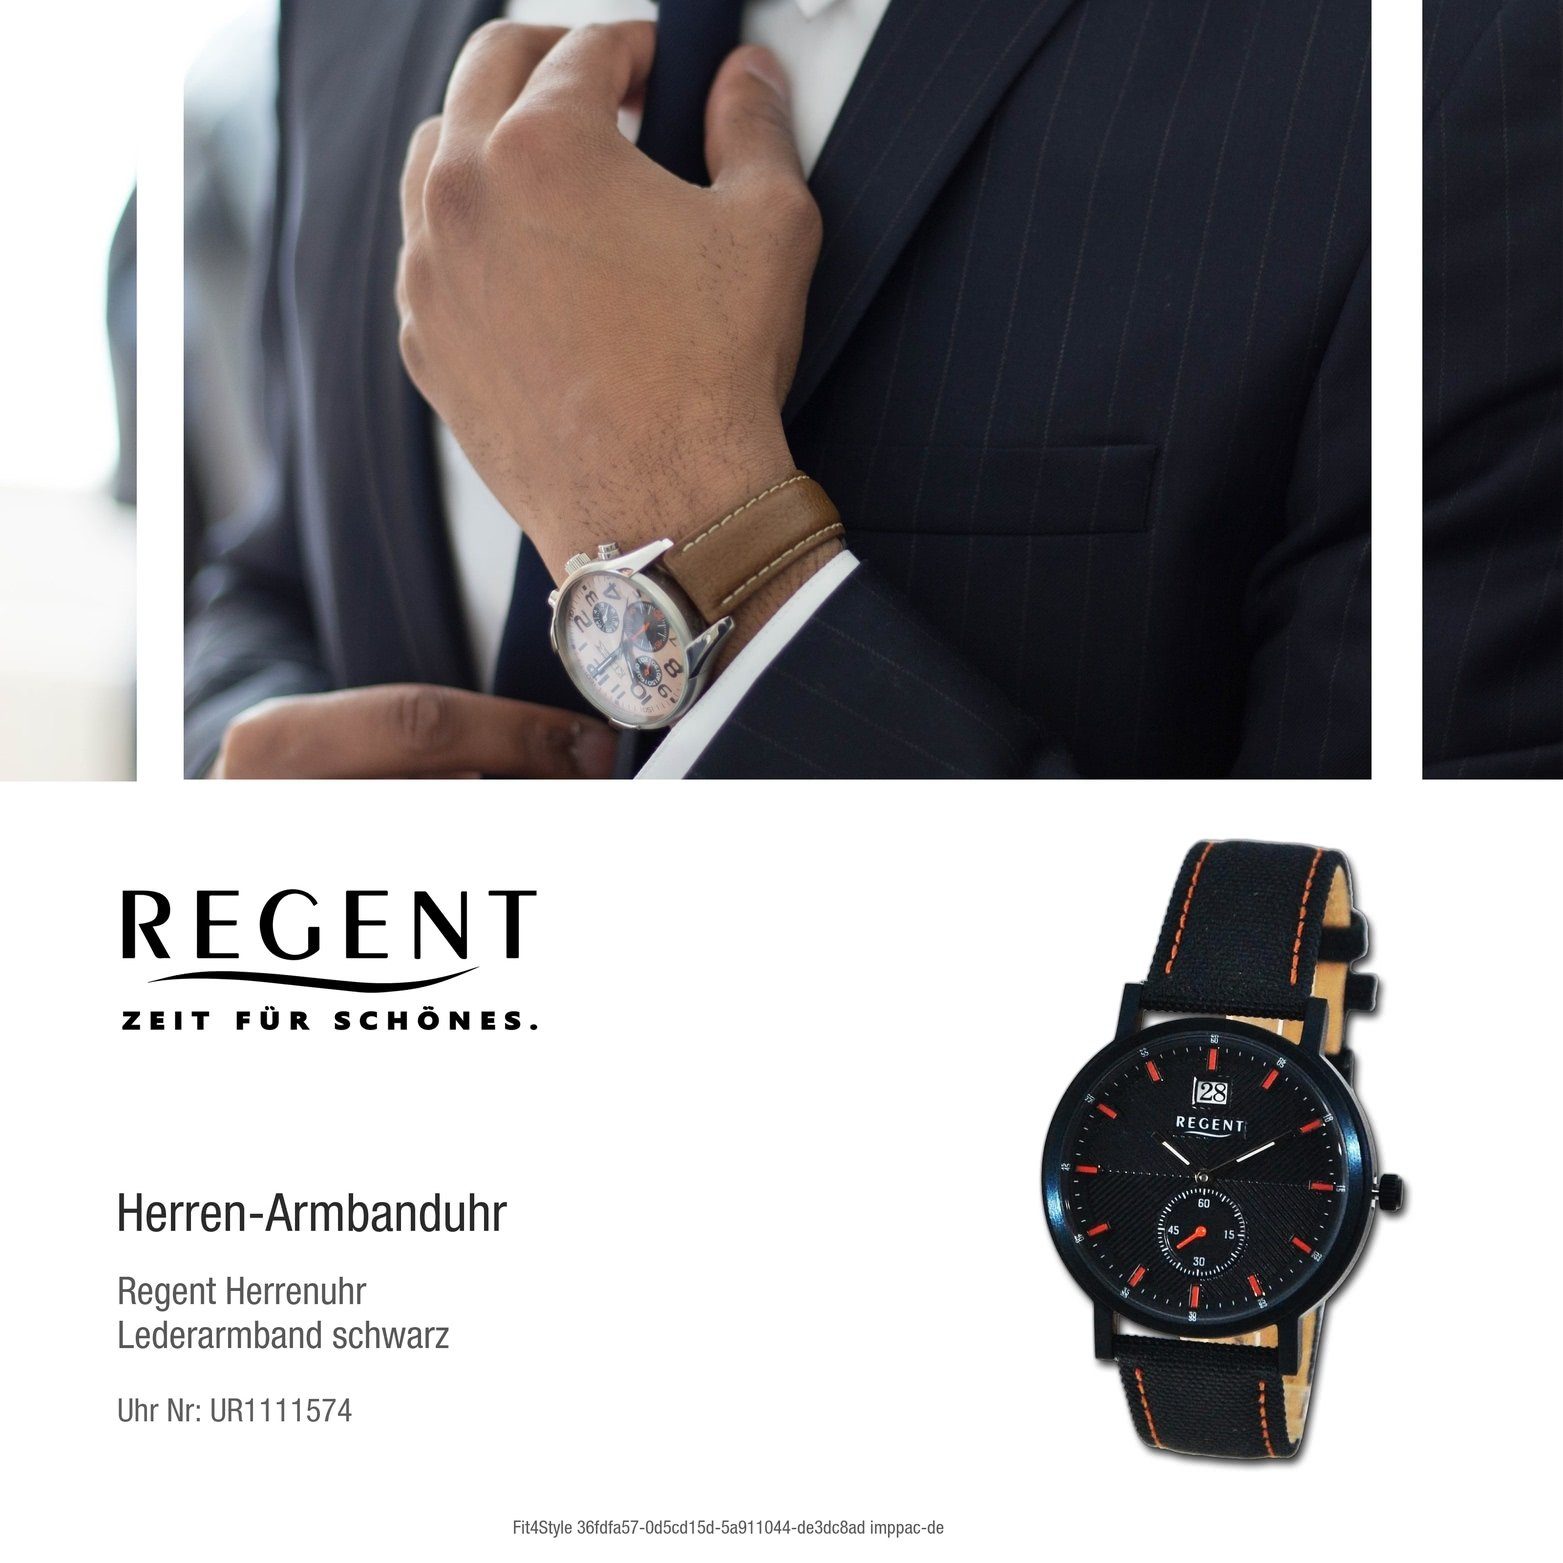 Regent Quarzuhr Regent Herren Armbanduhr Lederarmband Analog, orange, rundes Herrenuhr (ca 37mm) schwarz, Gehäuse, groß